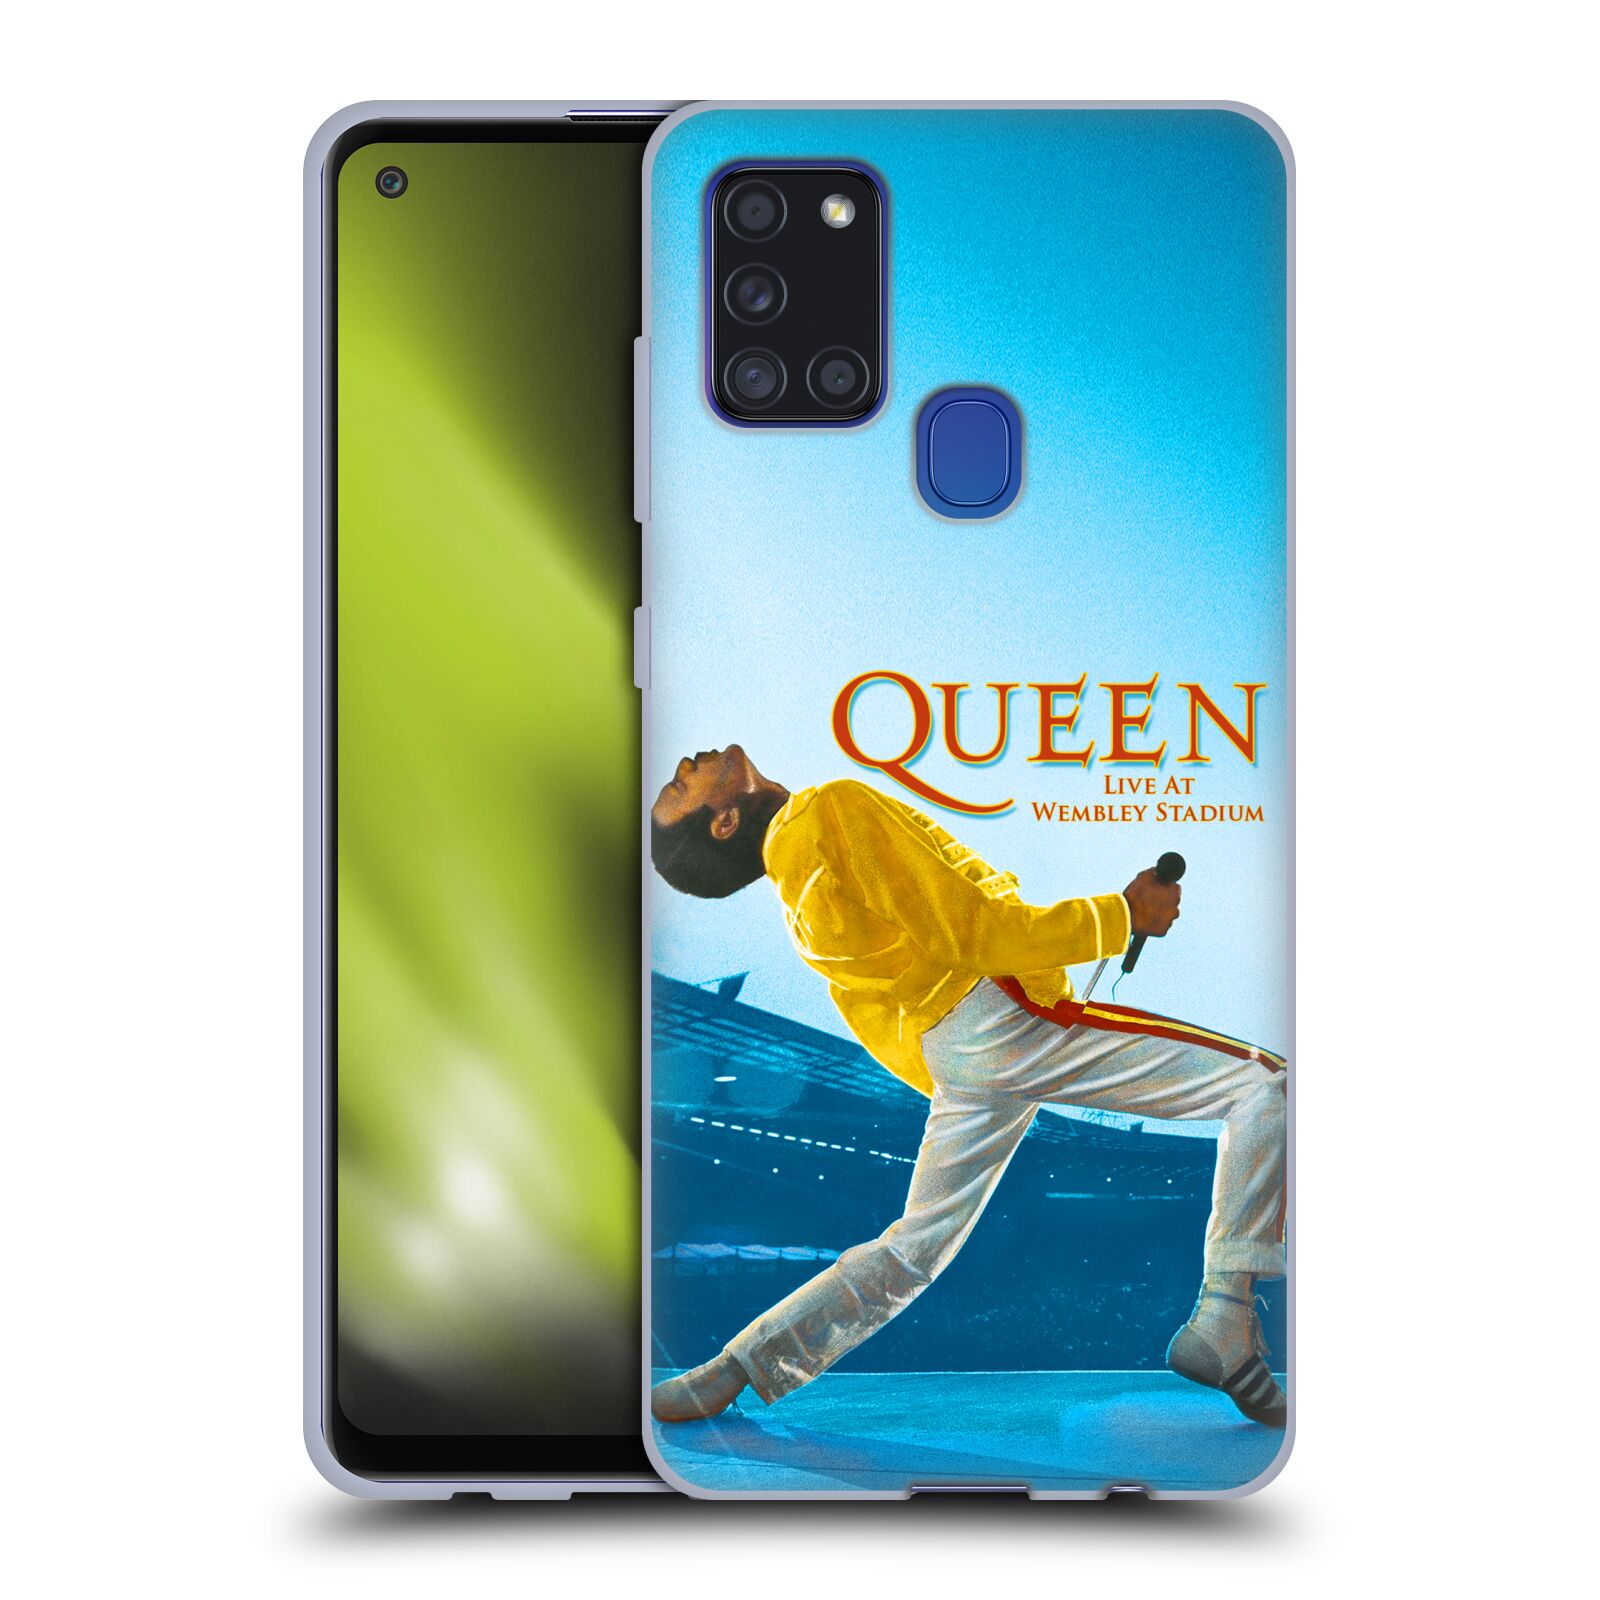 Silikonové pouzdro na mobil Samsung Galaxy A21s - Head Case - Queen - Freddie Mercury (Silikonový kryt, obal, pouzdro na mobilní telefon Samsung Galaxy A21s SM-A217F s motivem Queen - Freddie Mercury)